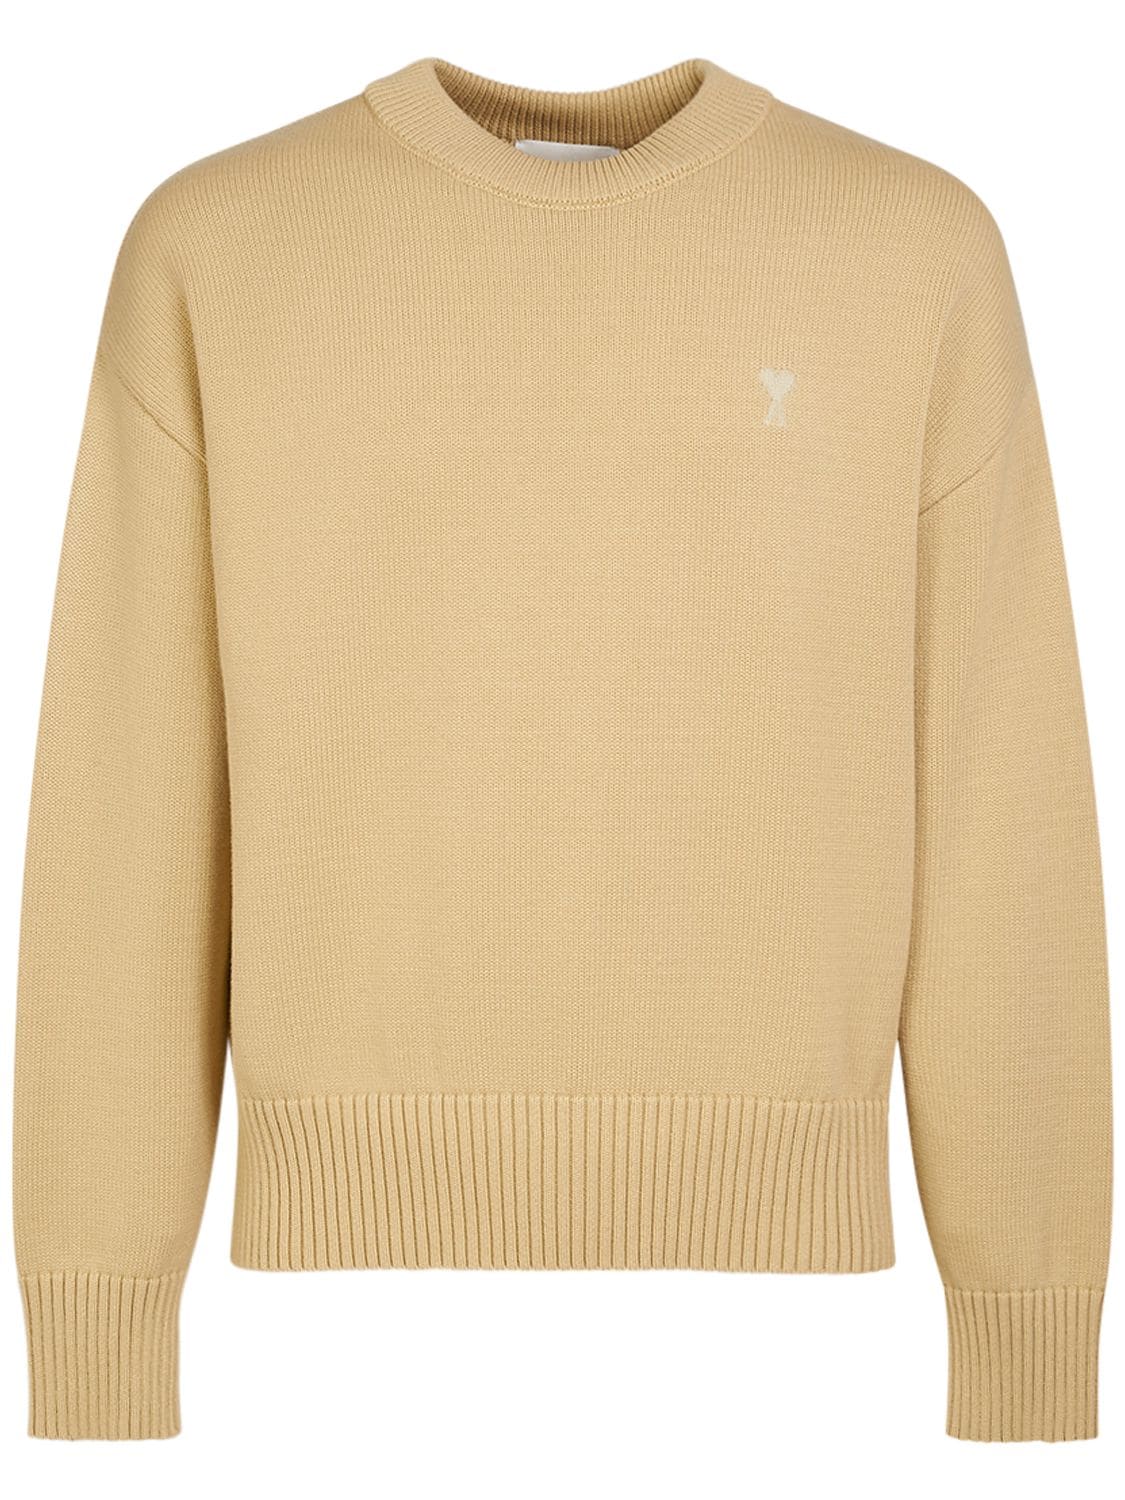 Ami Alexandre Mattiussi Adc Cotton & Wool Crewneck Sweater In Cream